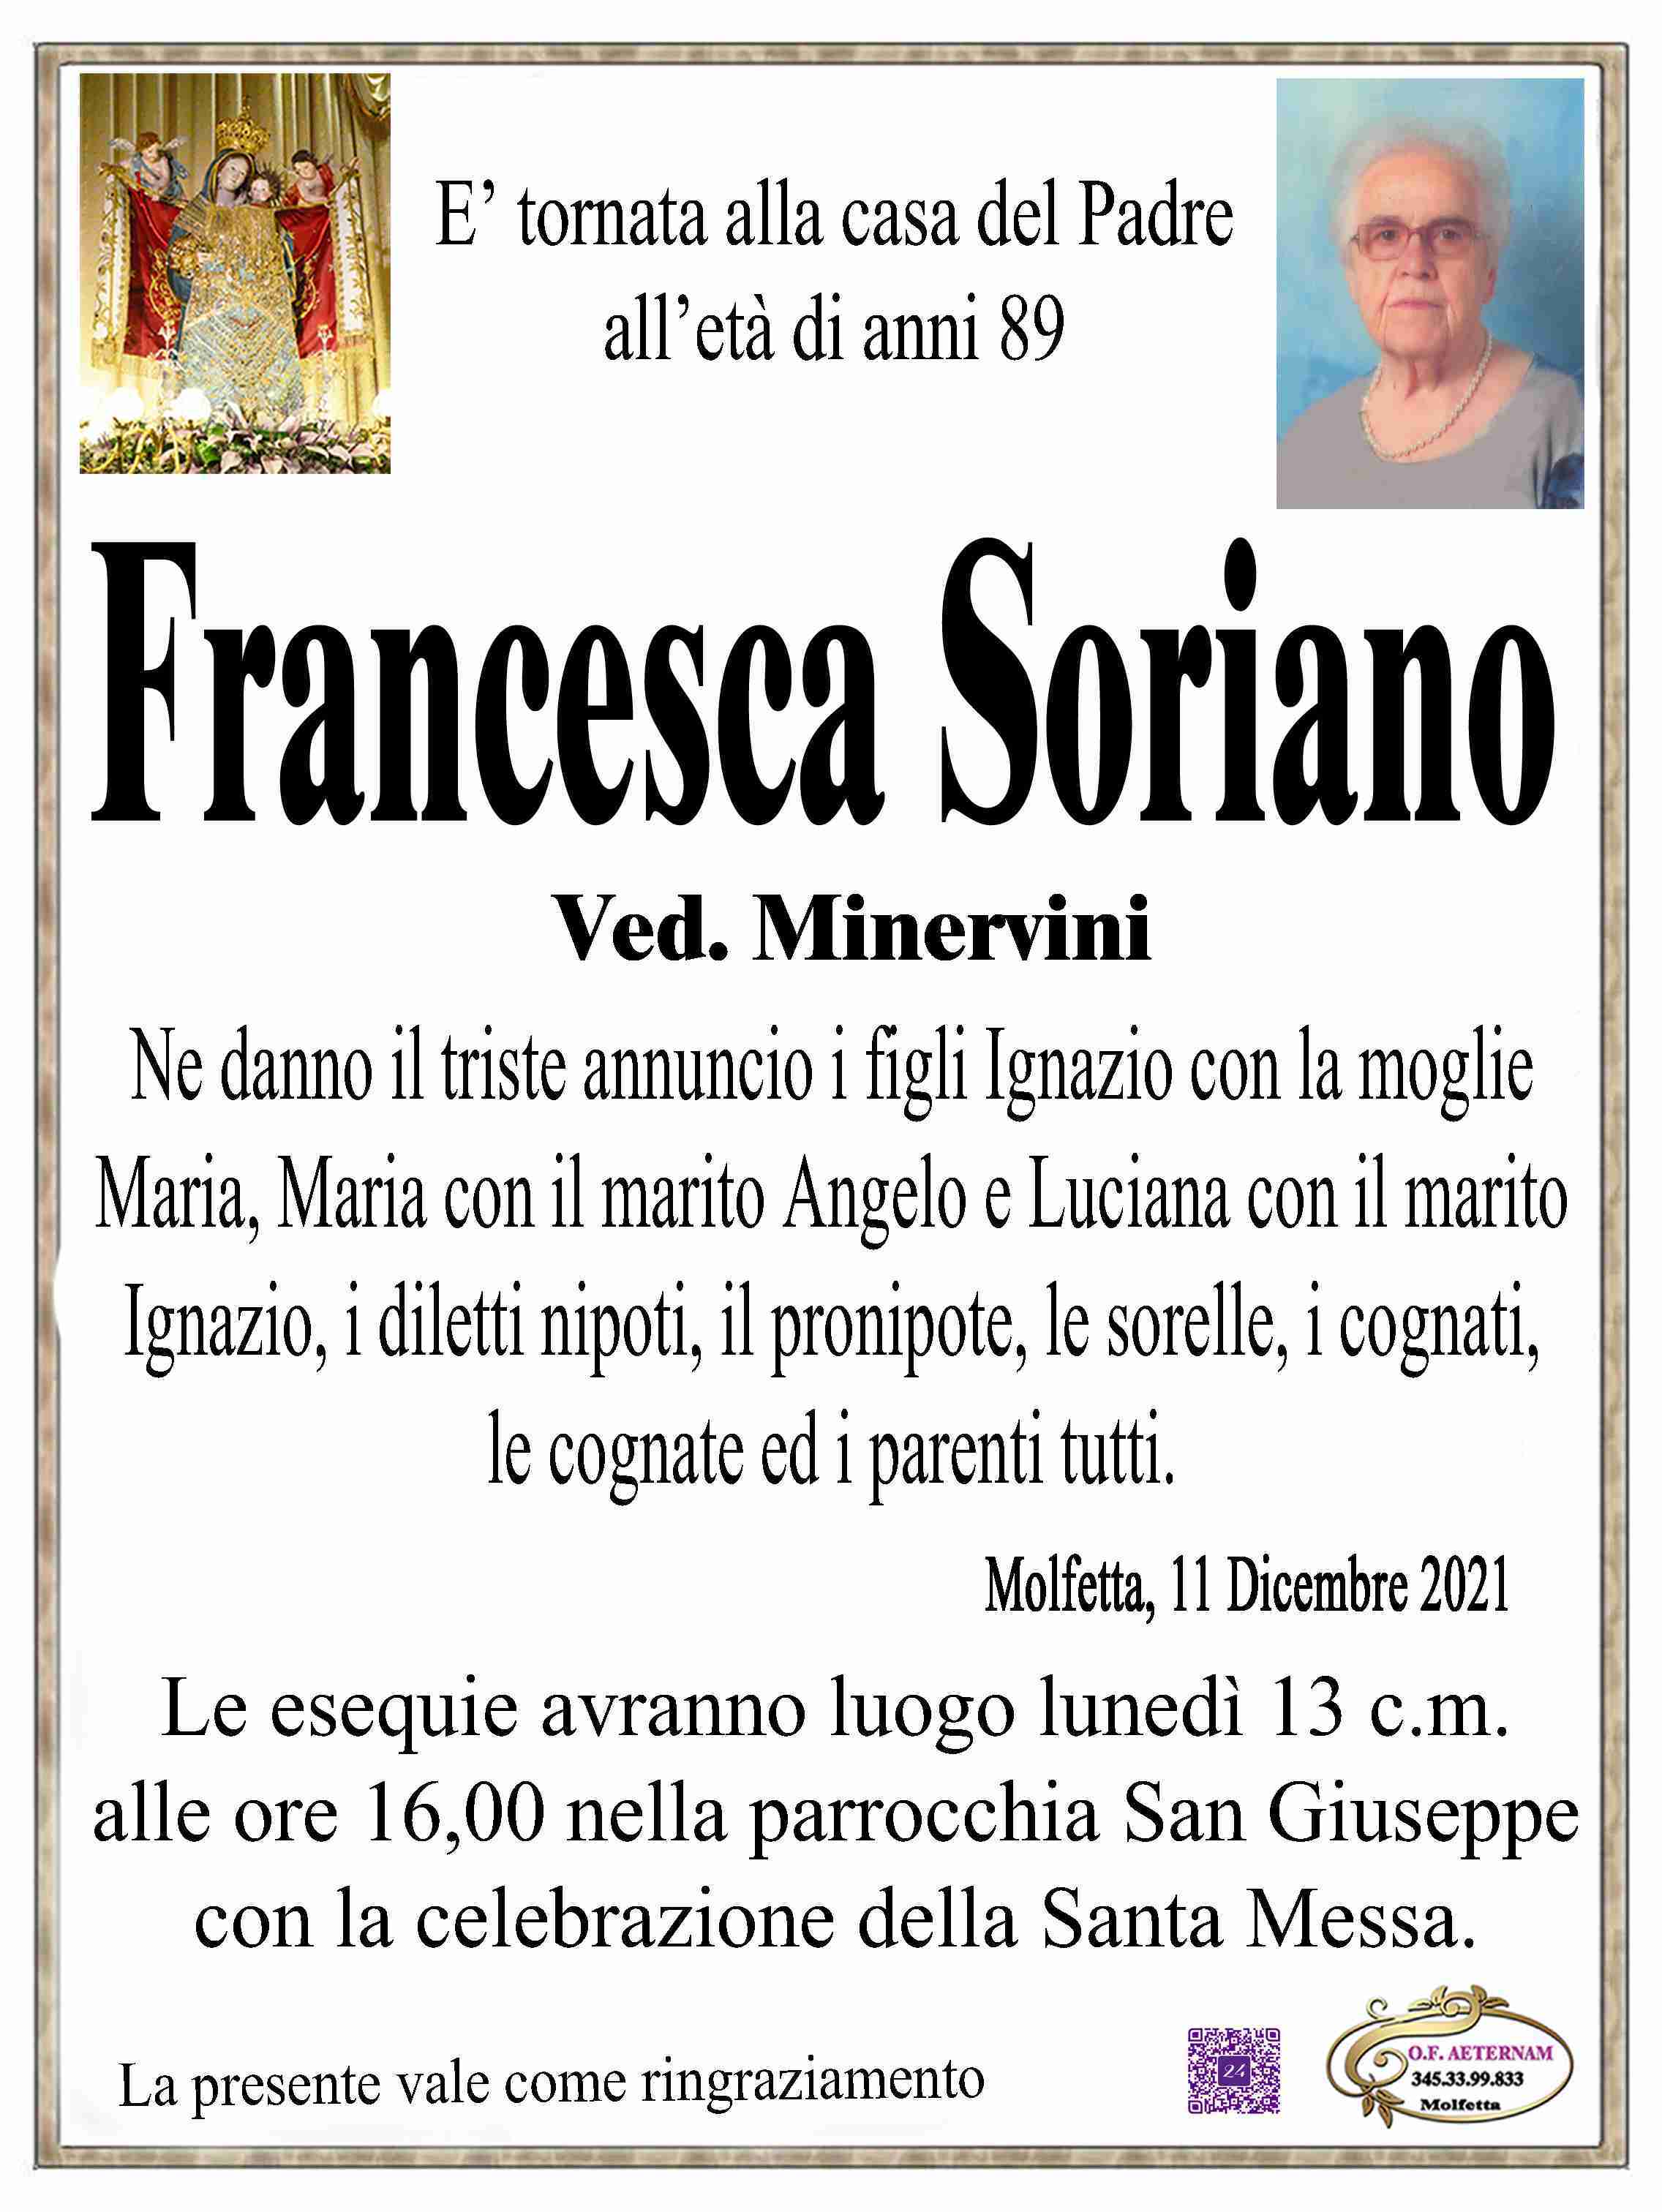 Francesca Soriano